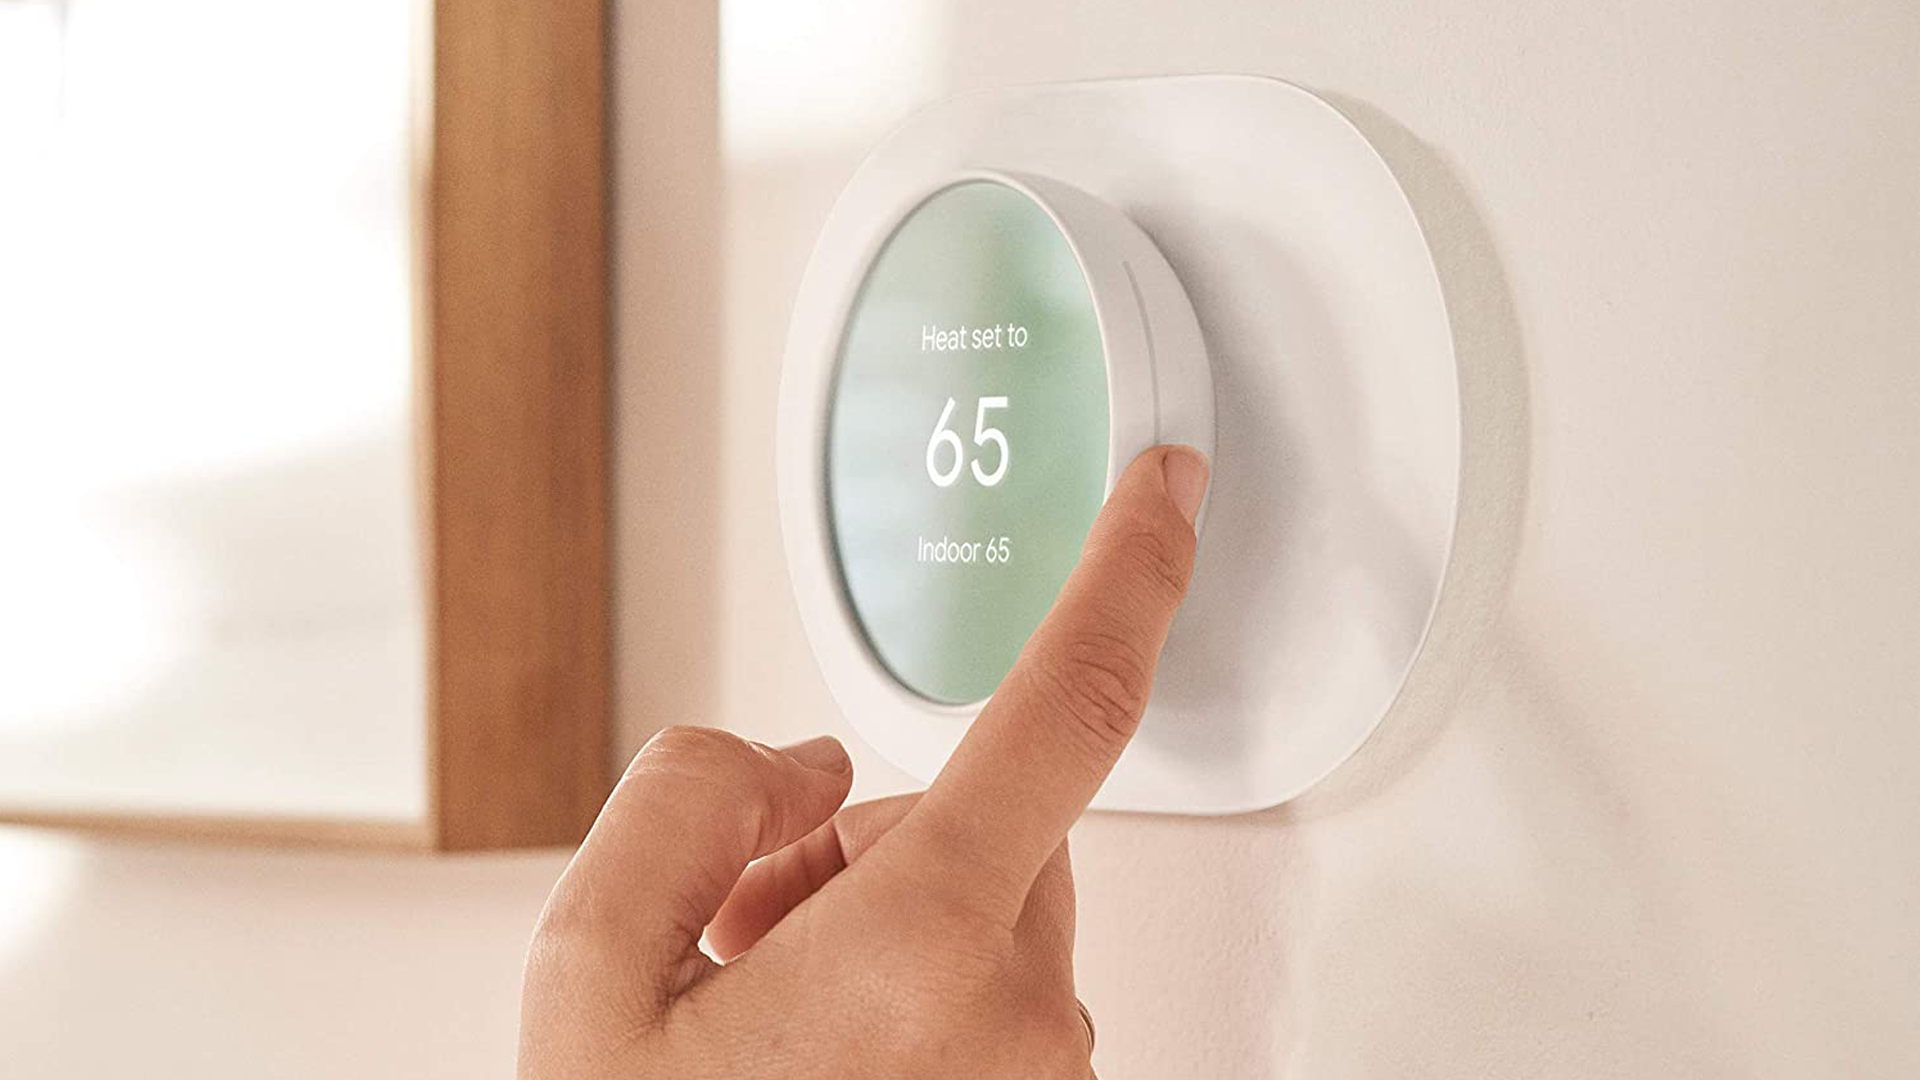 Google Nest Smart Thermostat